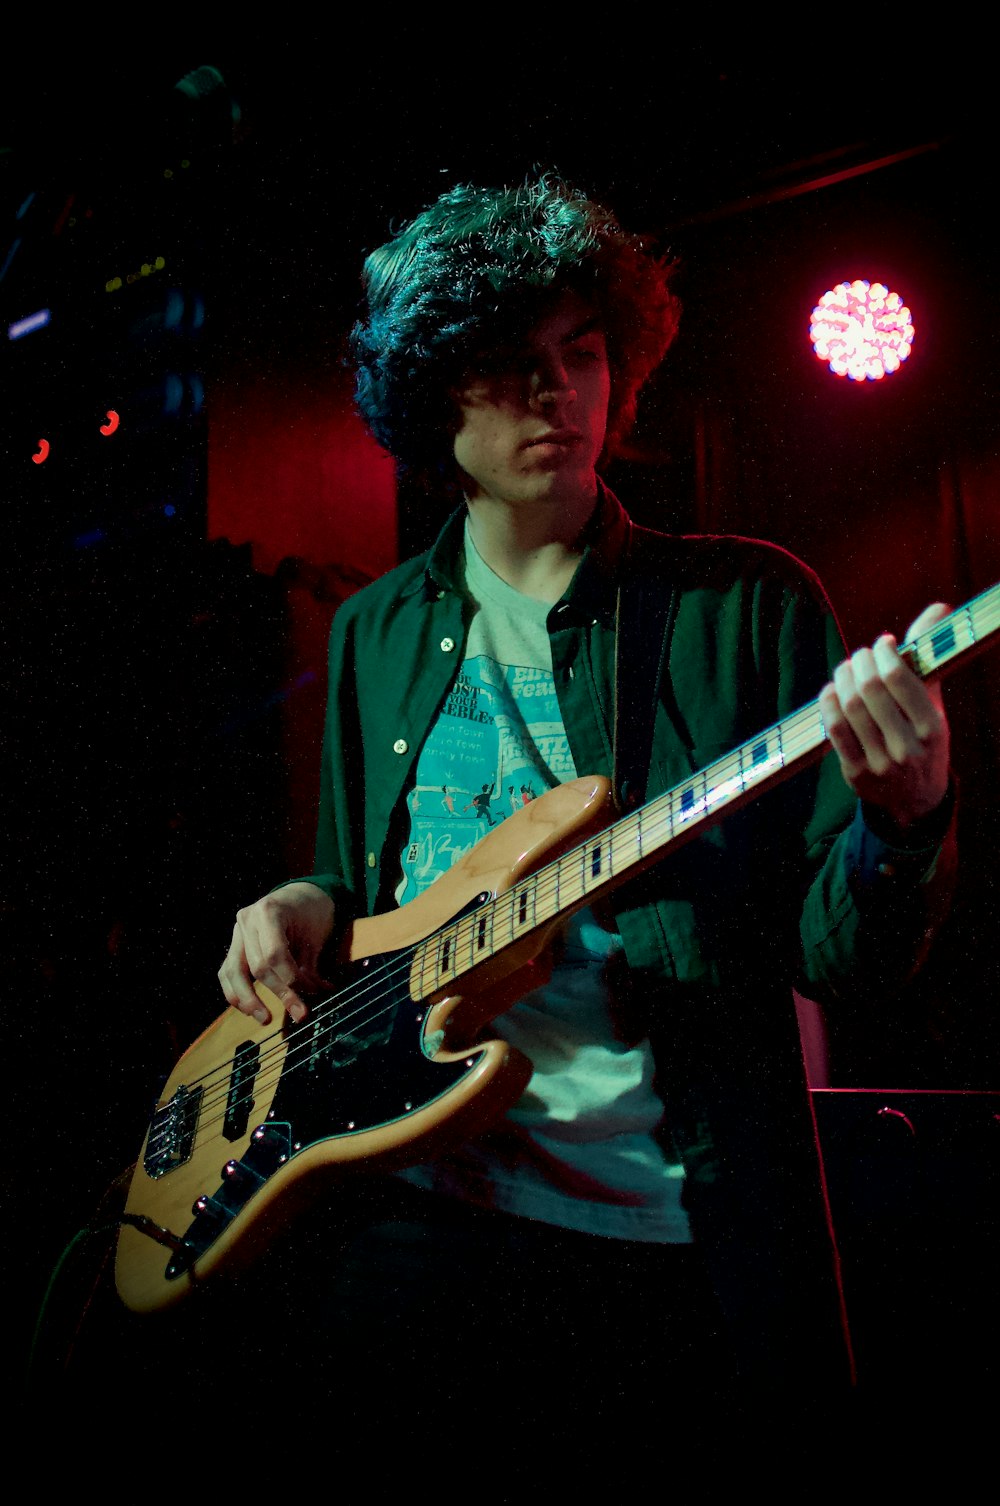 일렉트릭 기타를 연주하는 녹색 버튼 업 셔츠를 입은 남자